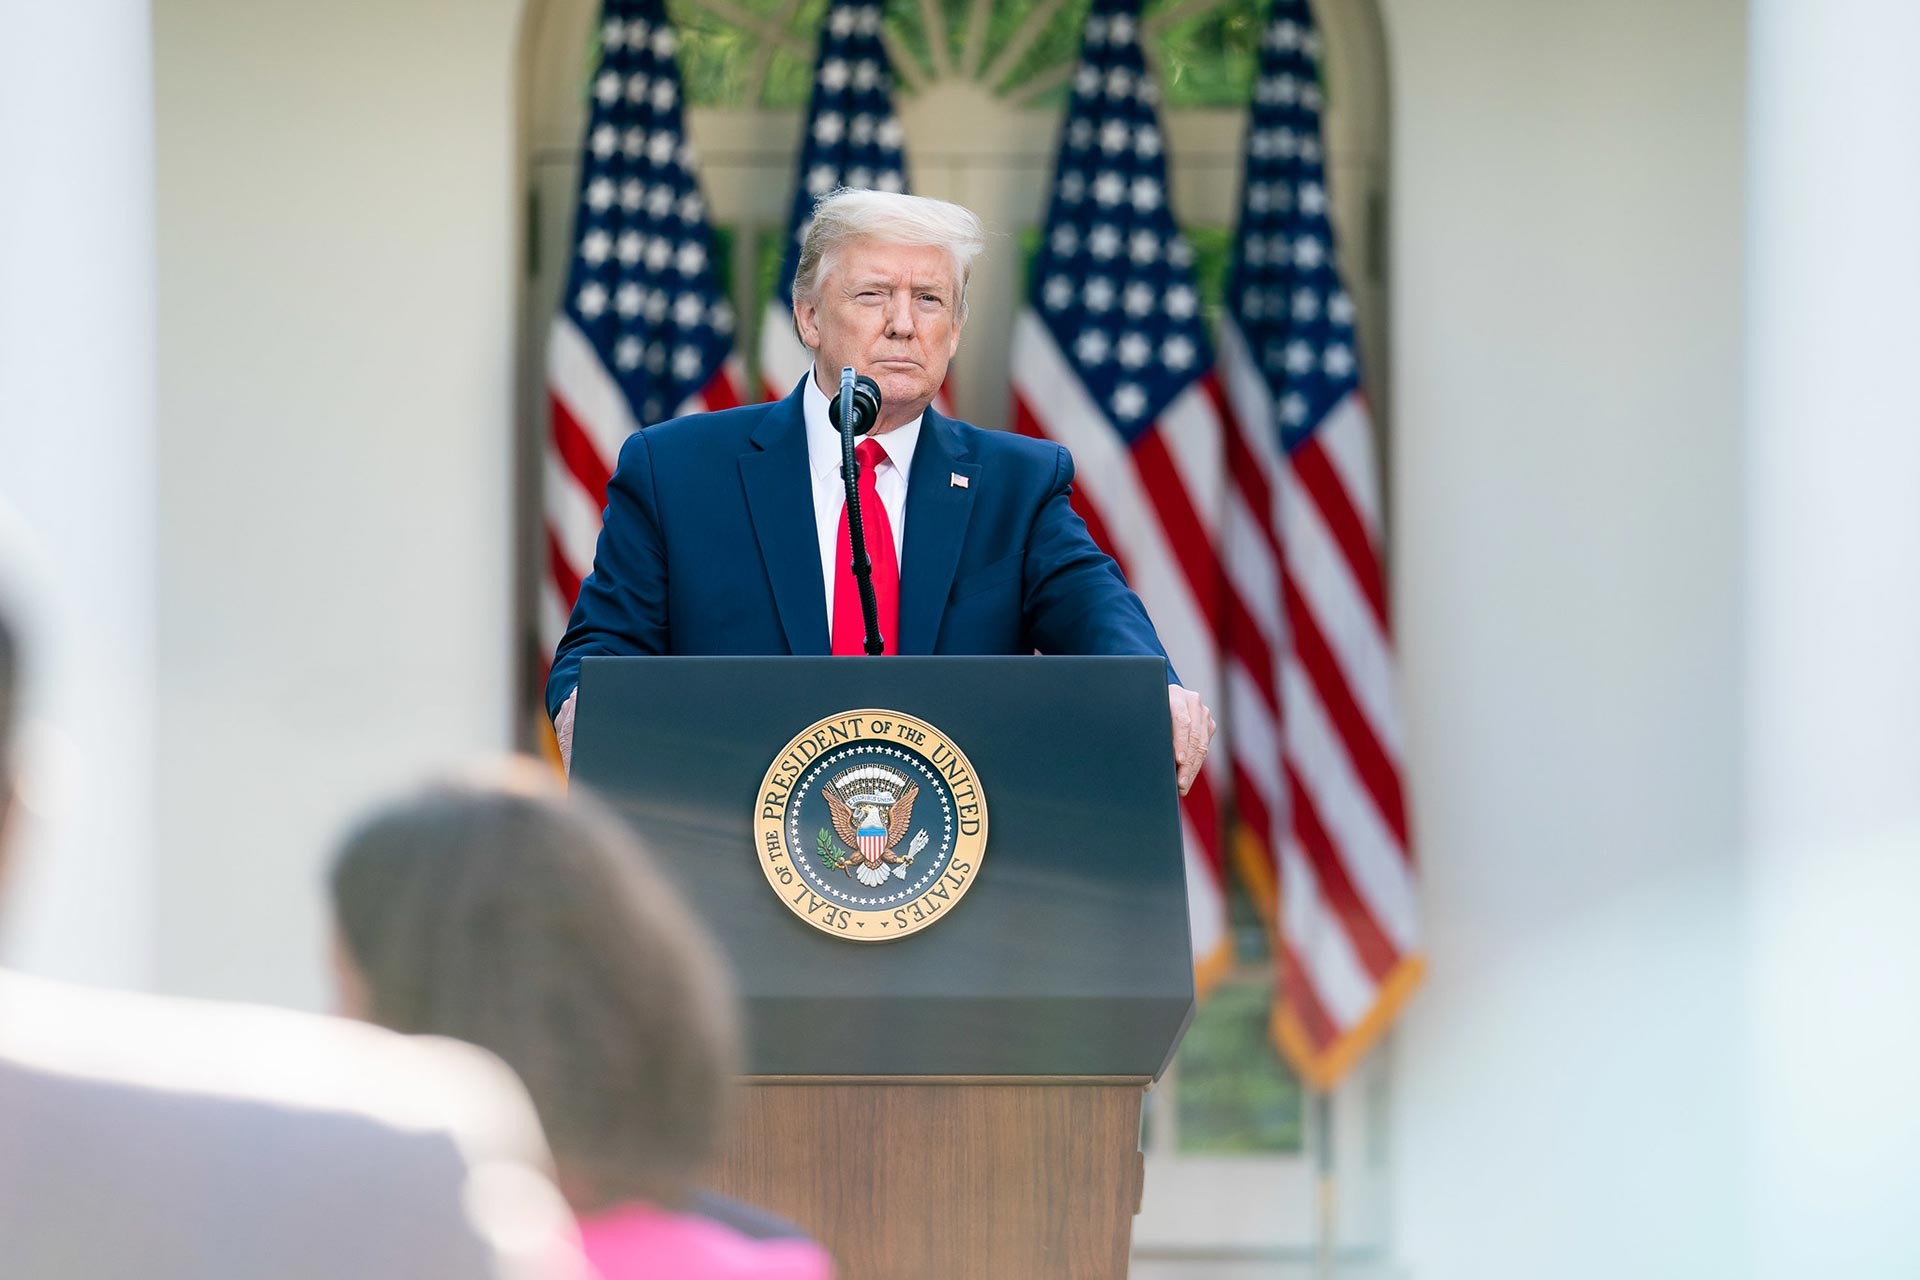 ABD Başkanı Donald Trump ABD bayrakları önünde konuşma yapıyor.